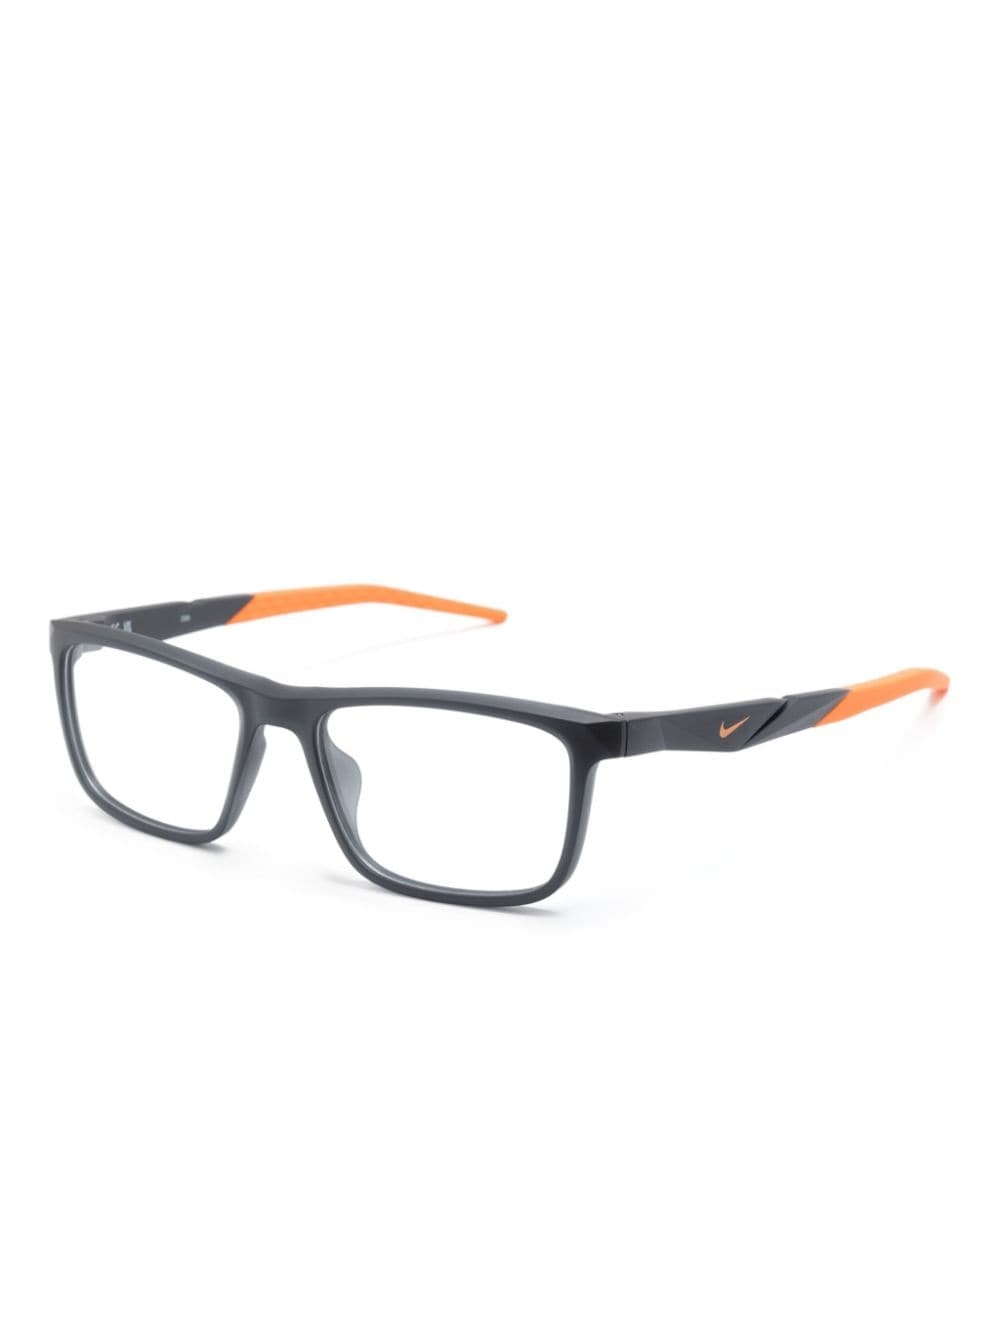 7057 rectangle-frame glasses - 2